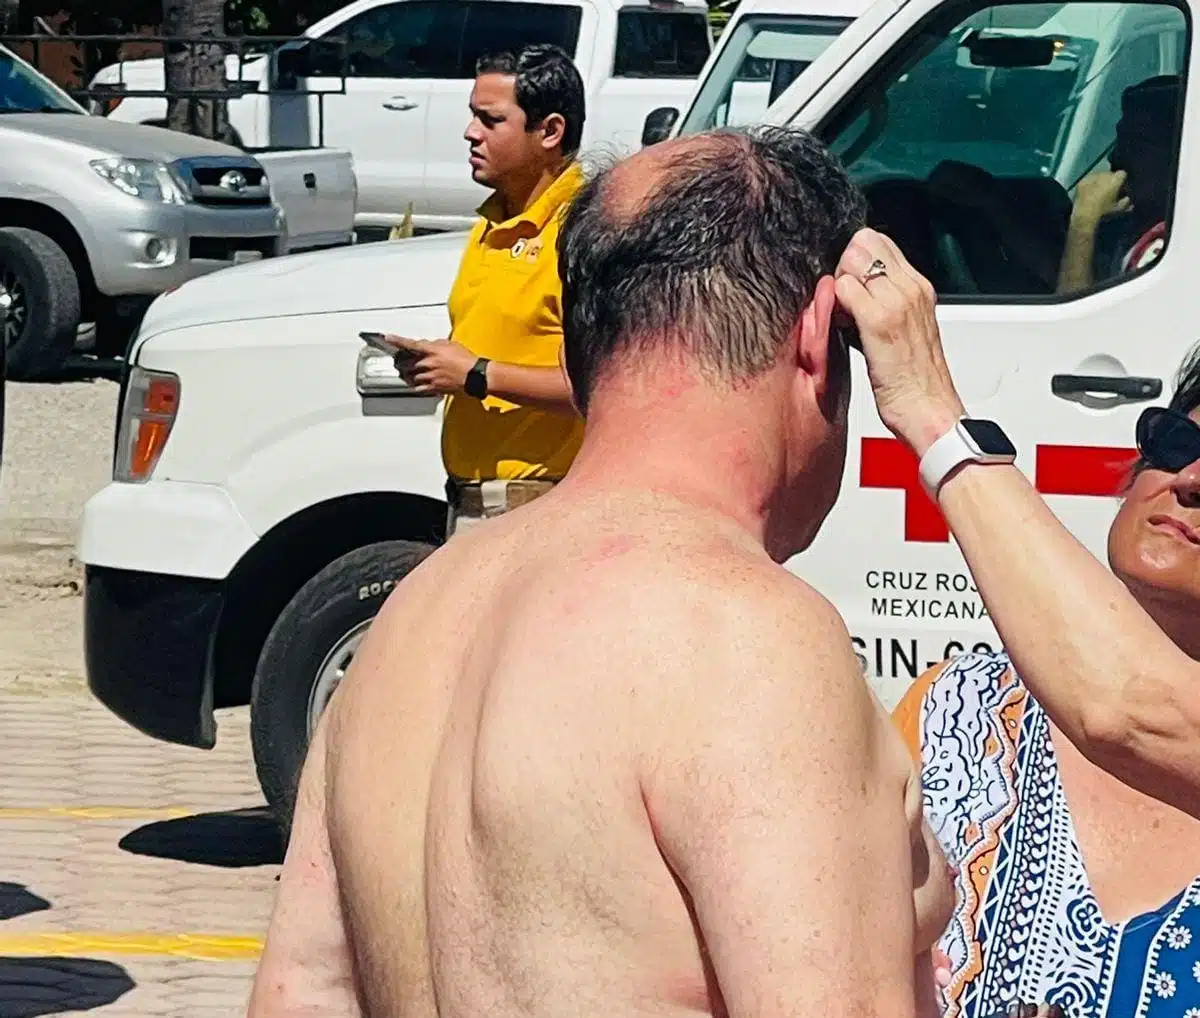 Empleados y turistas resultan lesionados por las picaduras, en Mazatlán